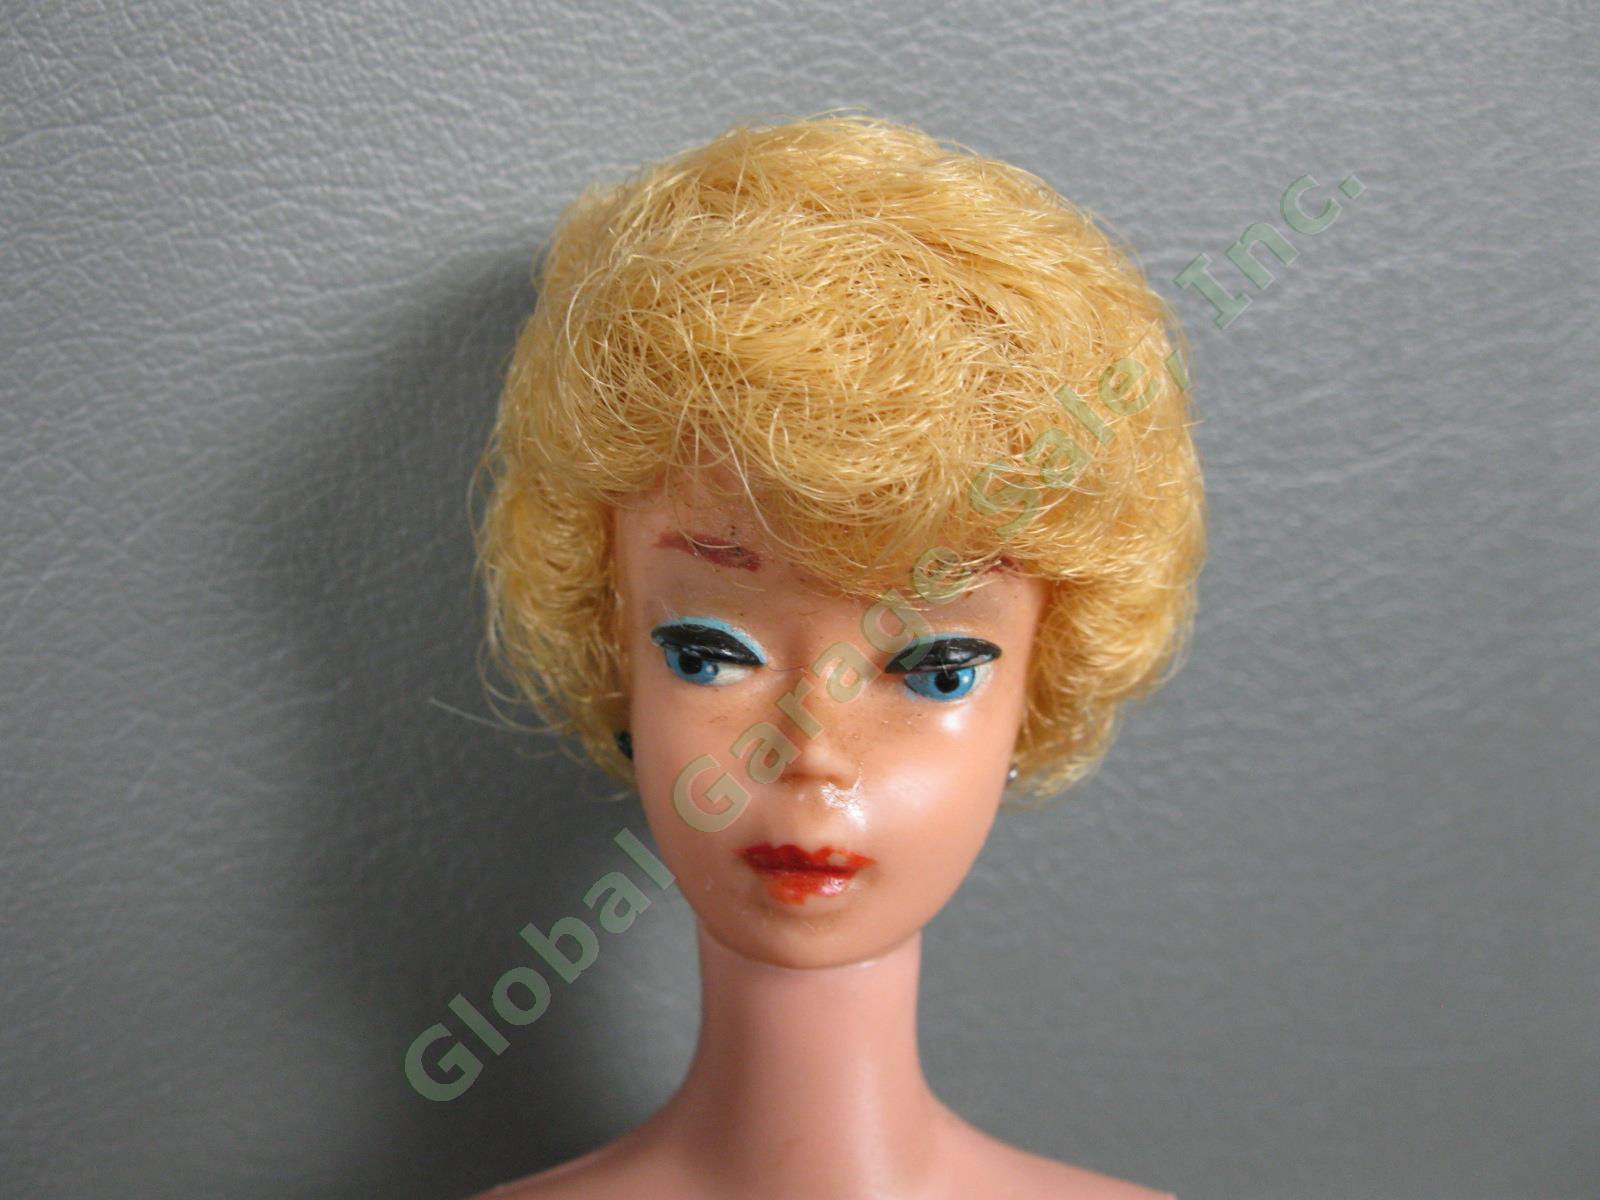 Original Vintage 850 Bubblecut Blonde Barbie Doll Black White Swimsuit Japan Box 1